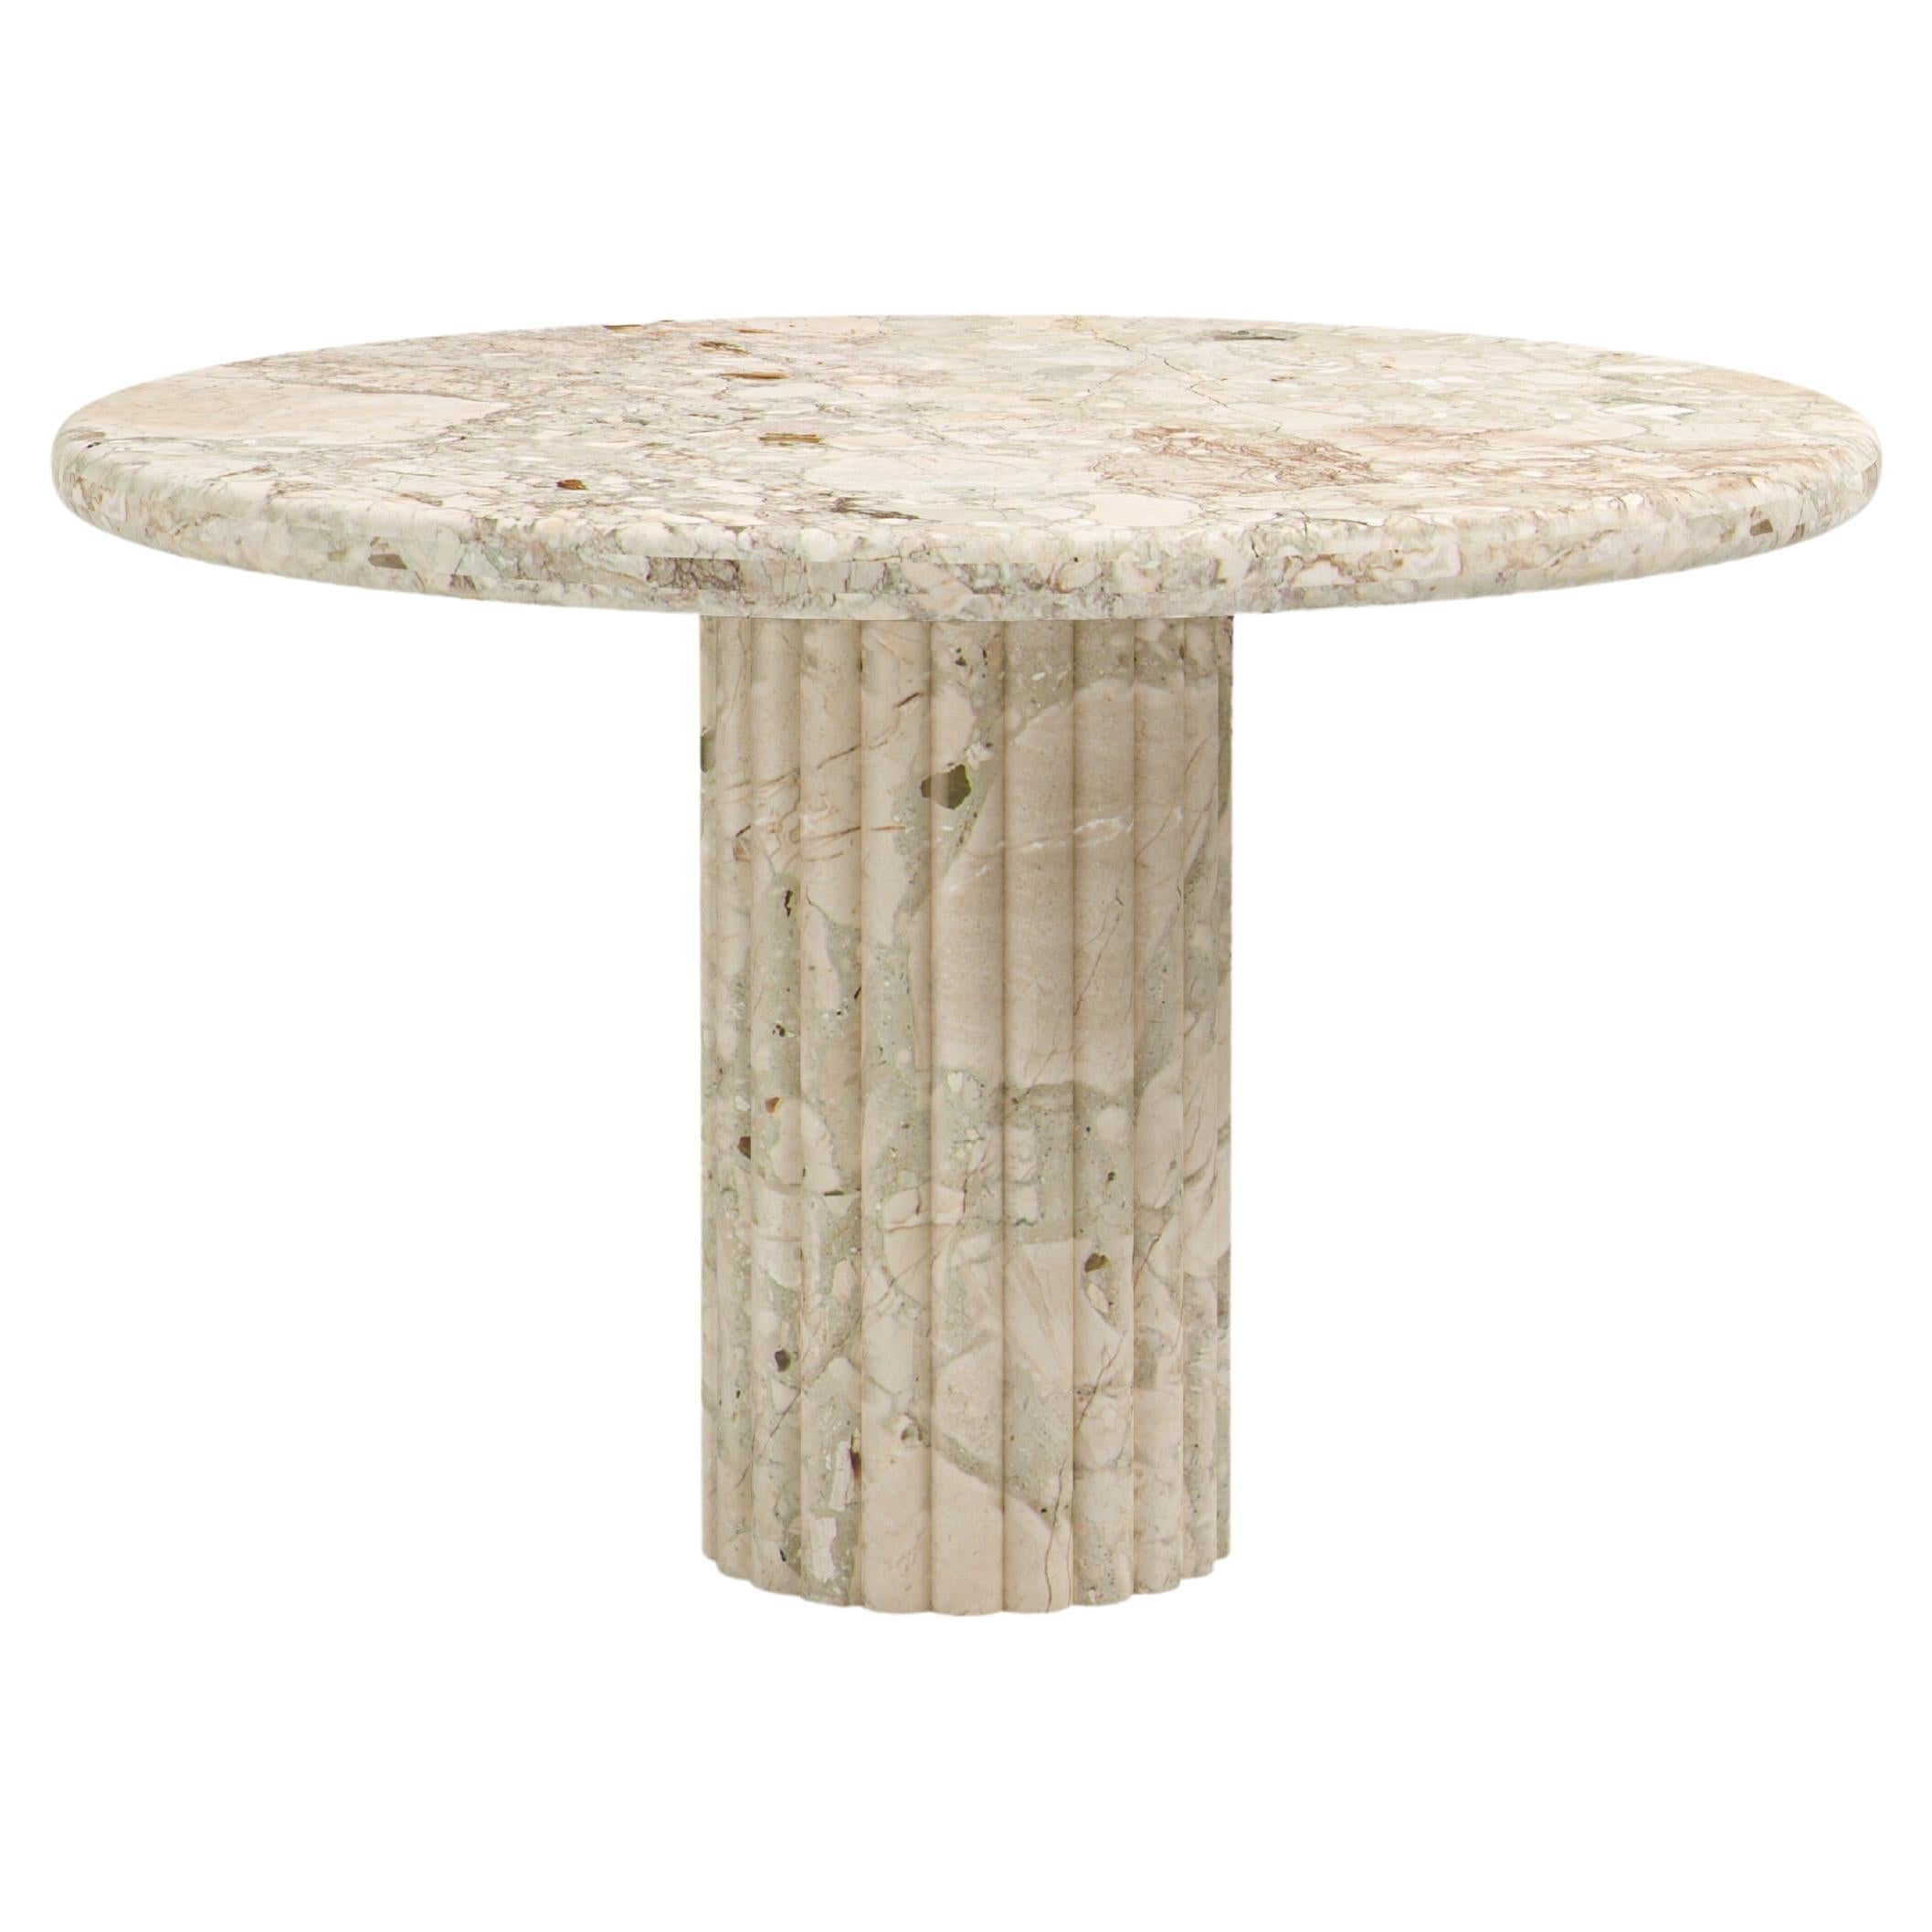 FORM(LA) Fluta Round Dining Table 54”L x 54”W x 30”H Breccia Rosa Marble